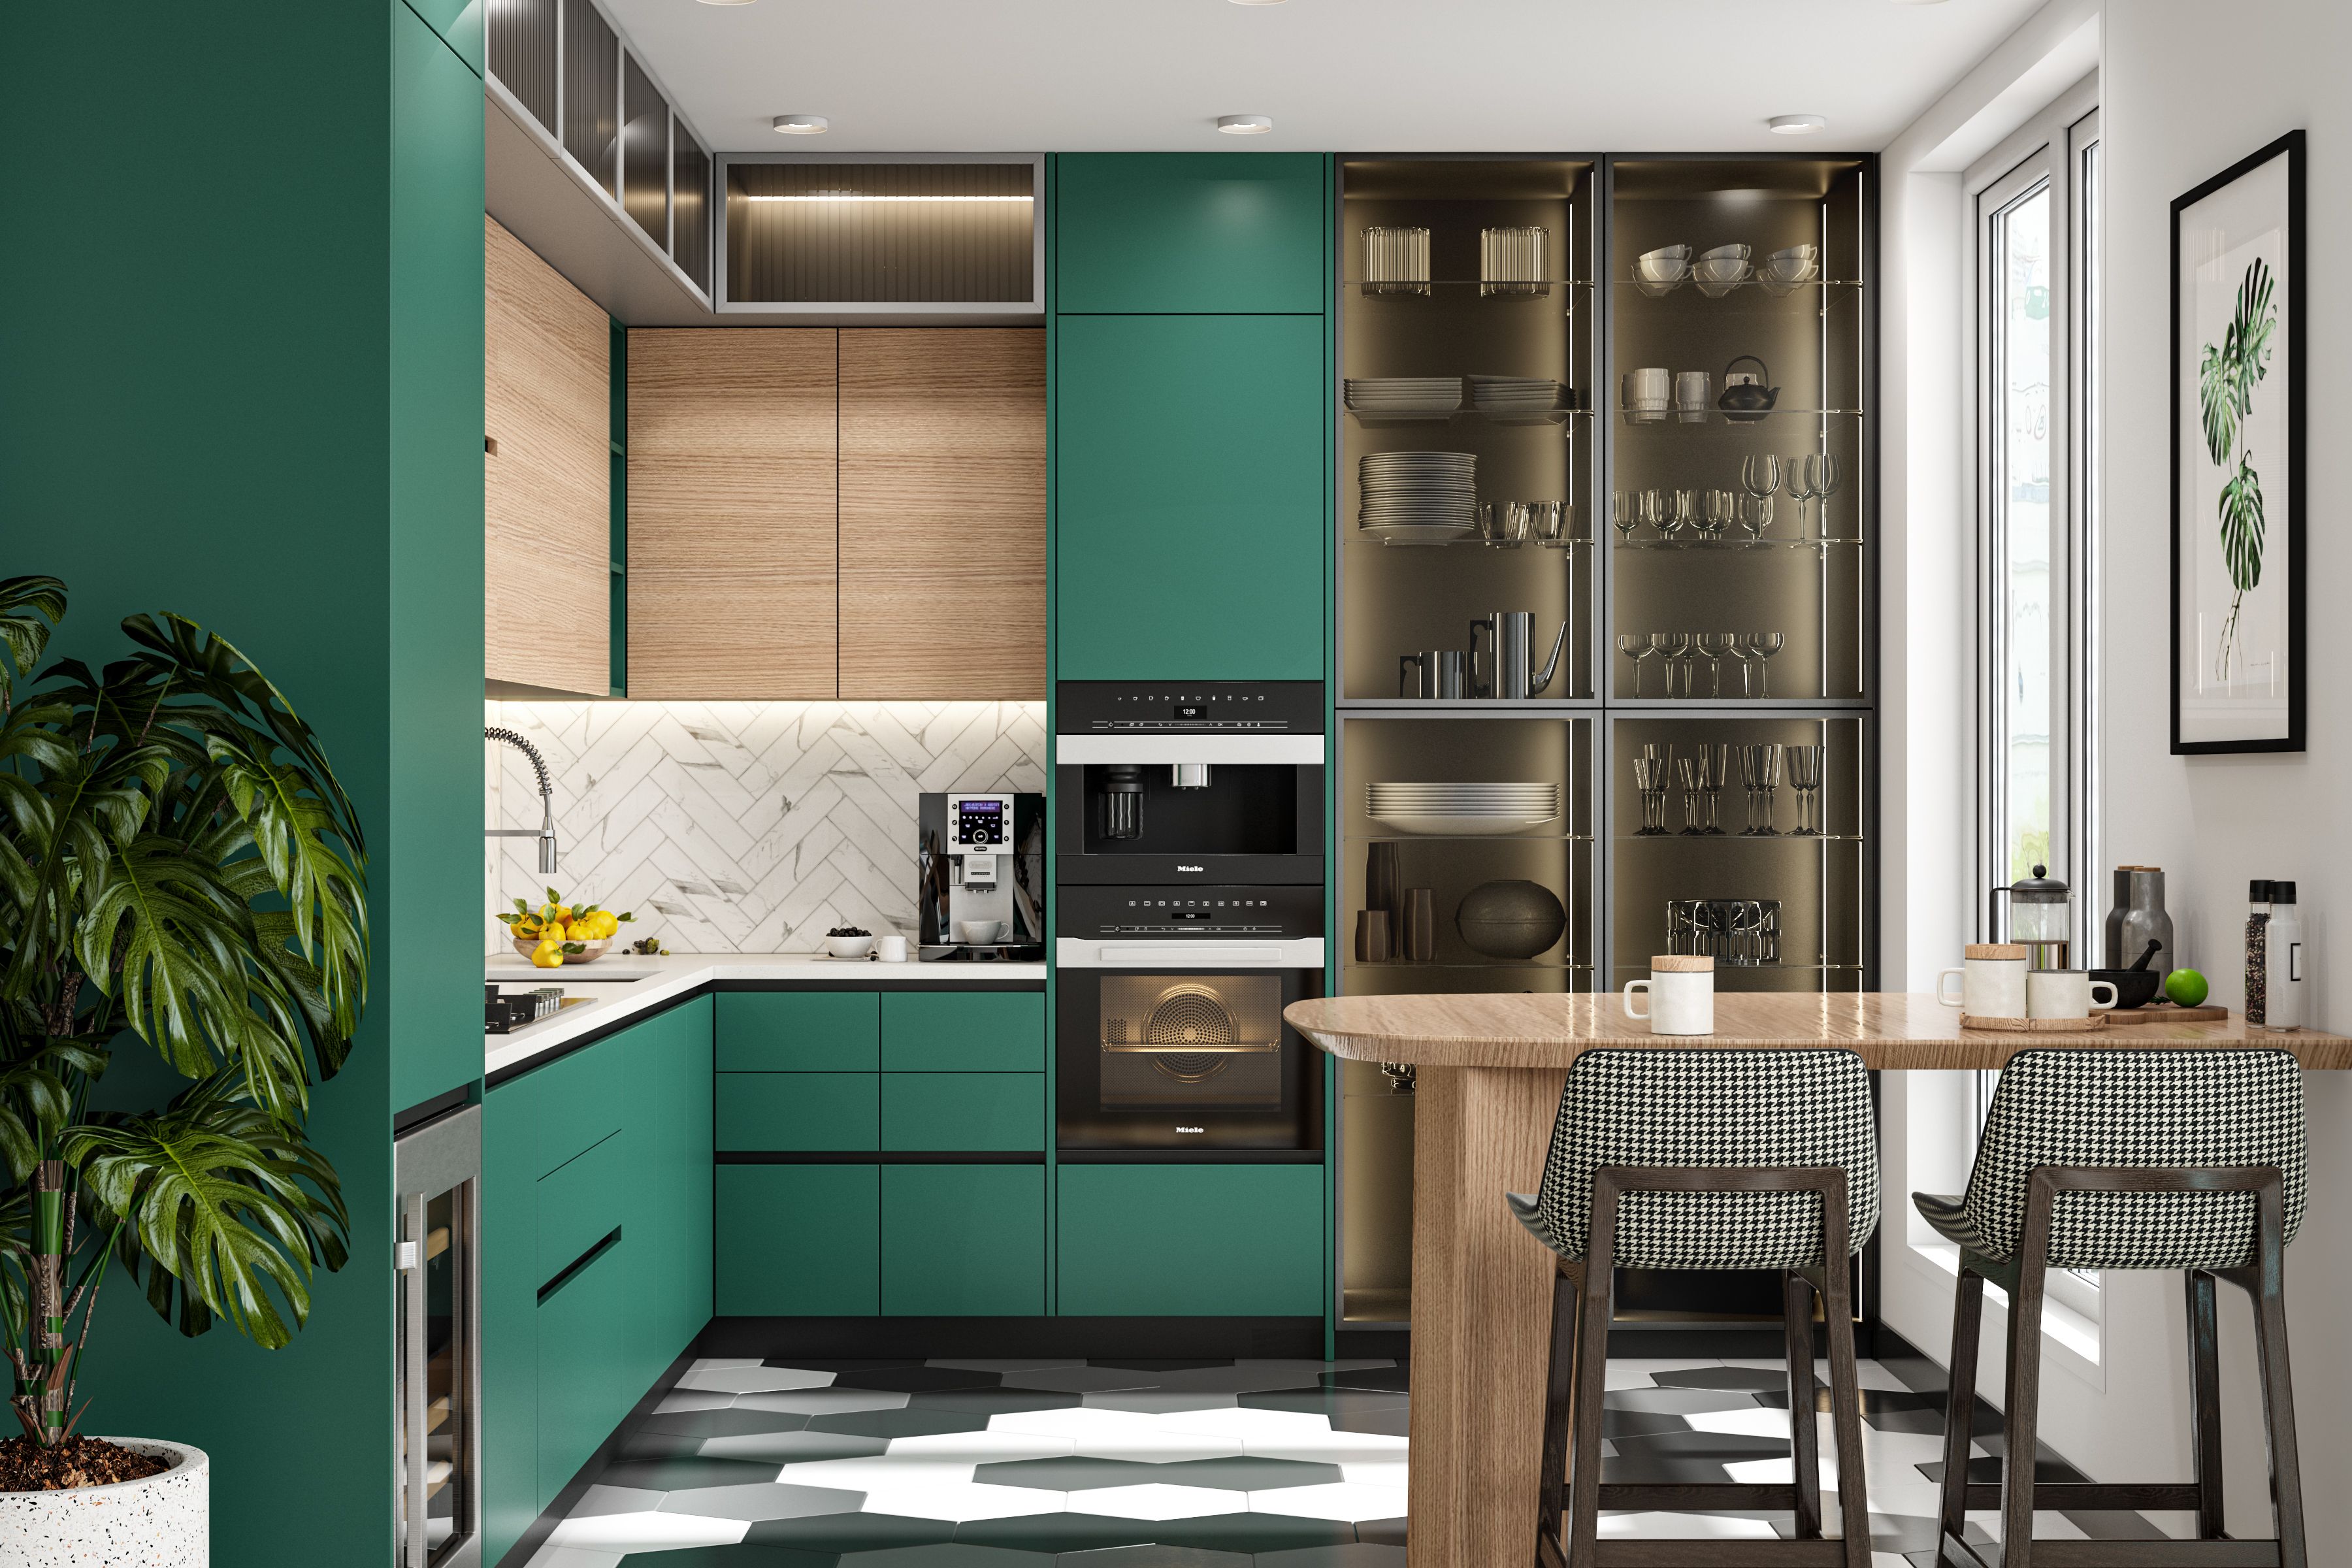 HDB Kitchen Designs   Modern Kitchen Interior Design Ideas in ...